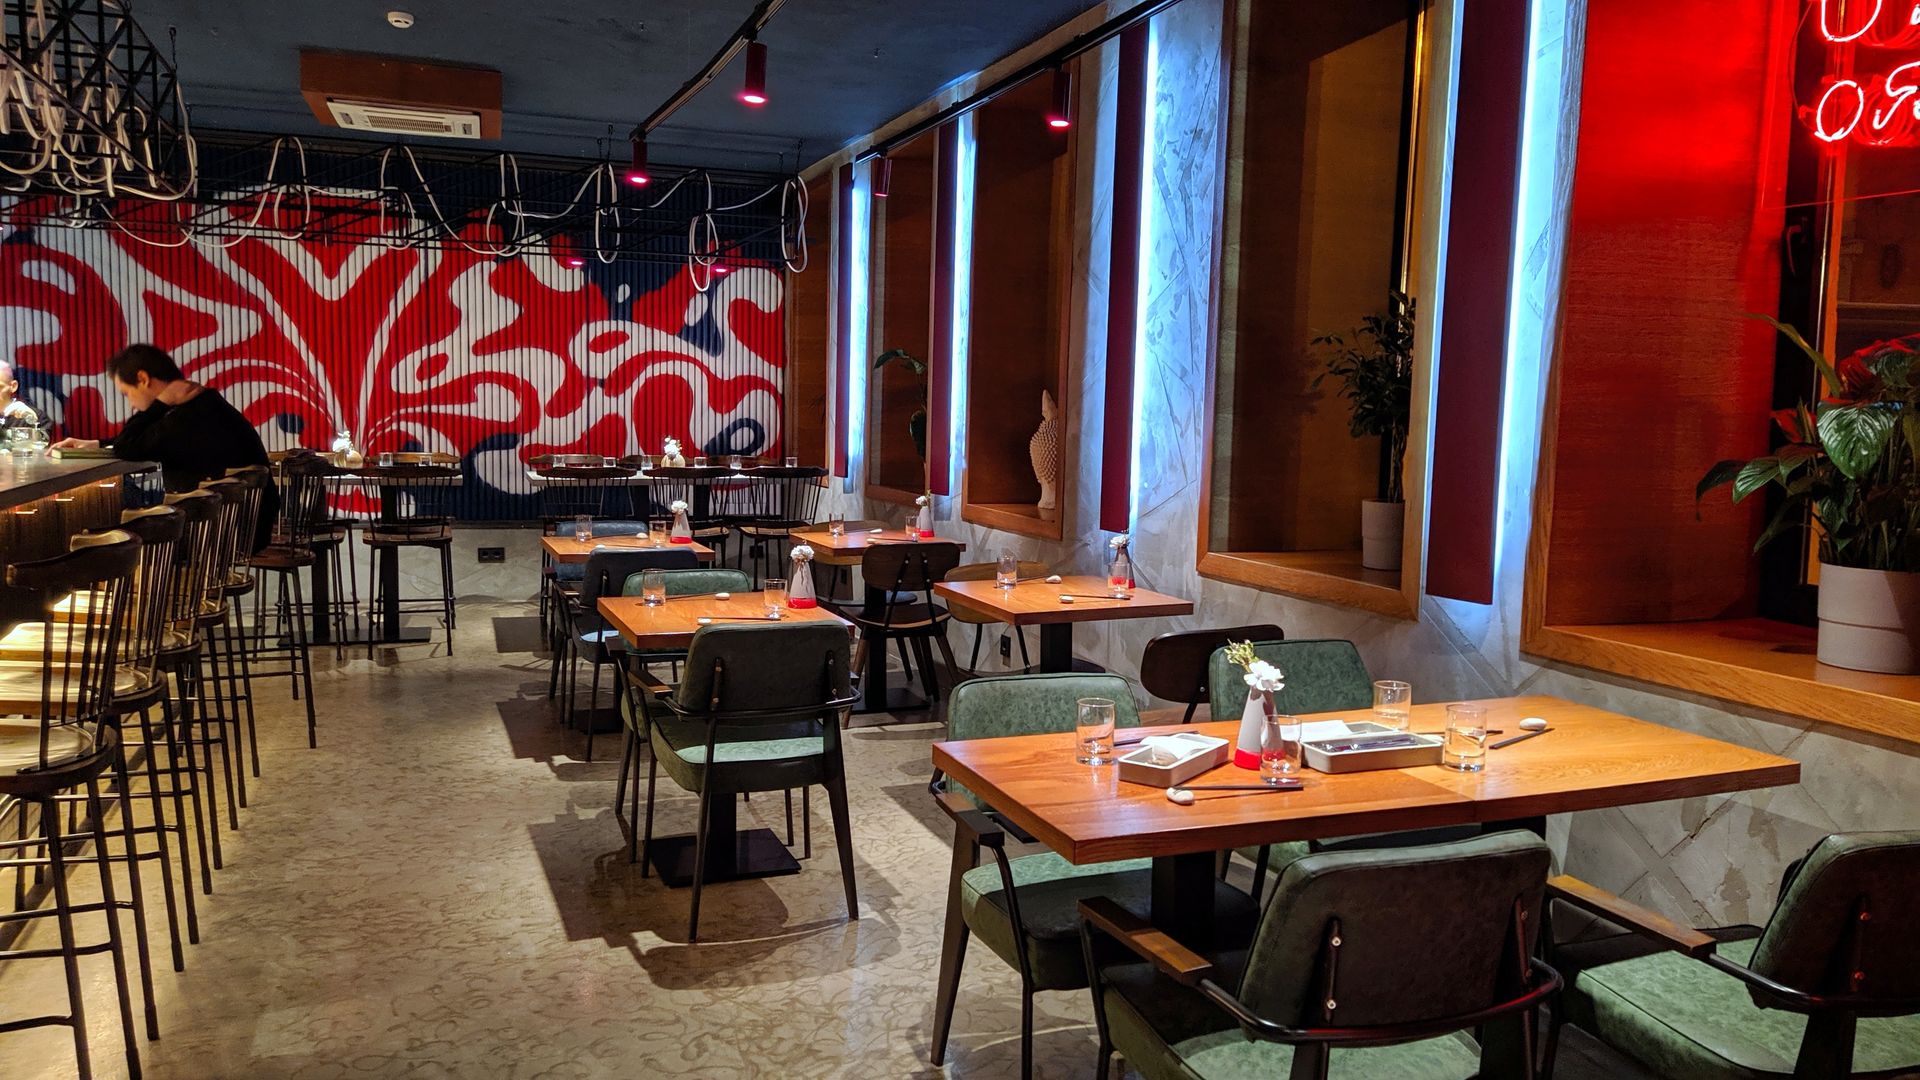 Бистро Nau на Рубинштейна, 28 был открыт в 2019 году, заменив паназиатский бар Tent, проработавший на этом месте лишь несколько месяцев. При перезапуске акцент сделали на японской кухне (от суши до раменов), вине и коктейлях.